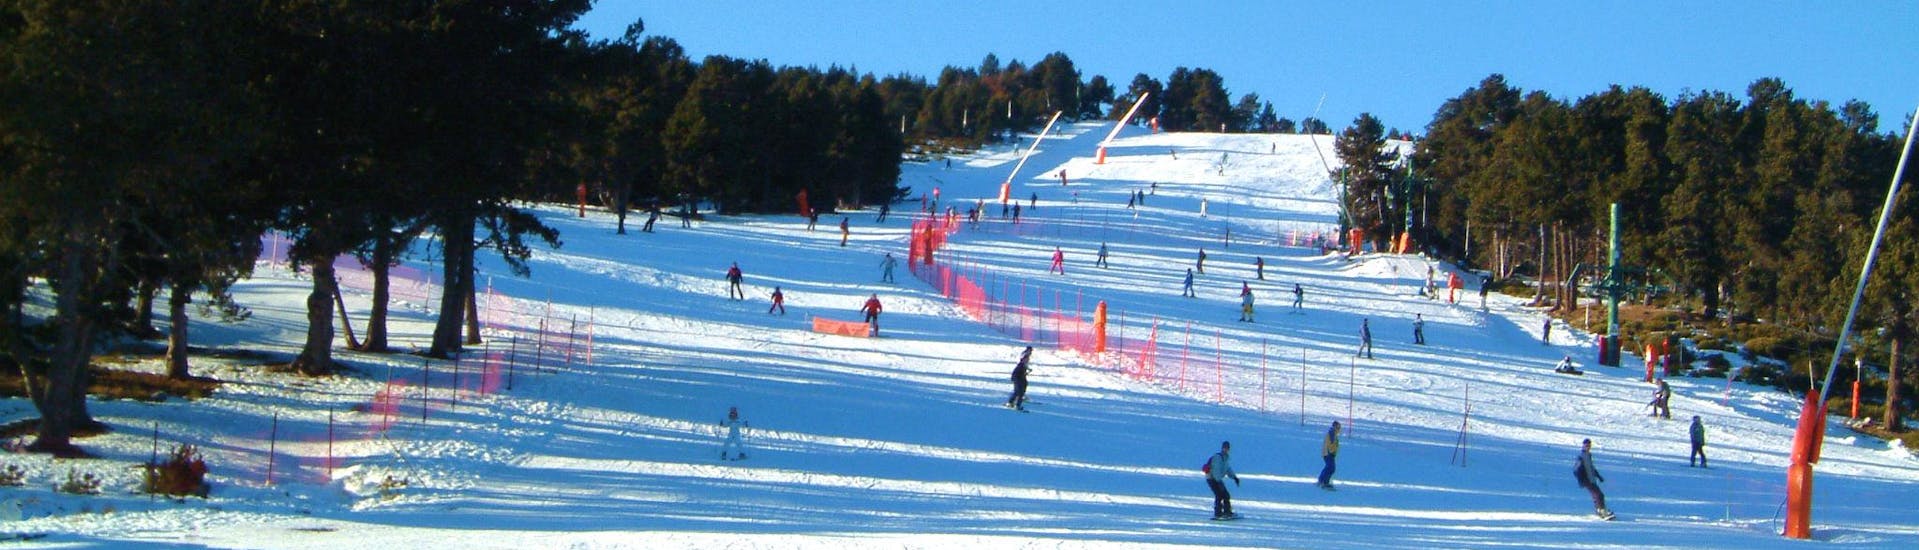 Une photo du paysage enneigé de Font Romeu Pyrénées 2000, où les écoles de ski locales offrent une grande variété de cours de ski pour tous ceux qui veulent apprendre à skier.